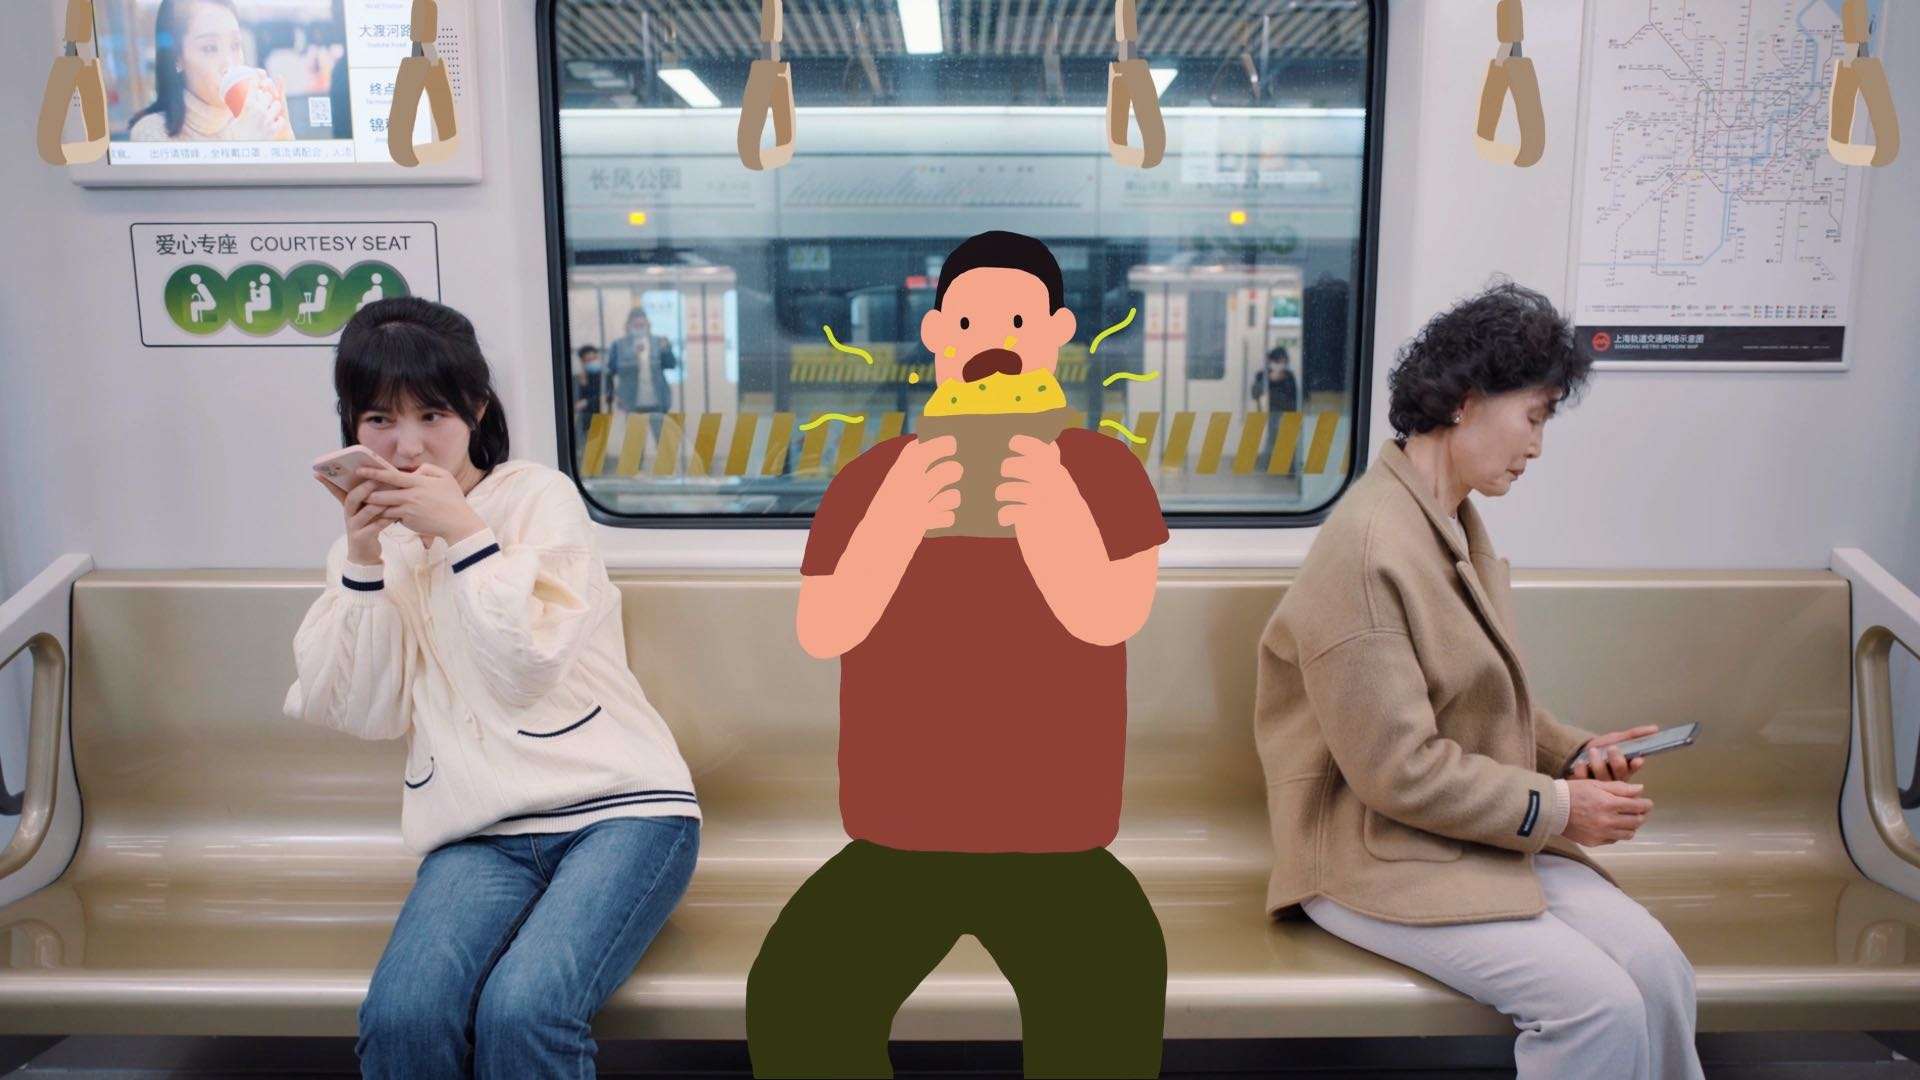 上海地铁安全宣传片-文明礼仪篇